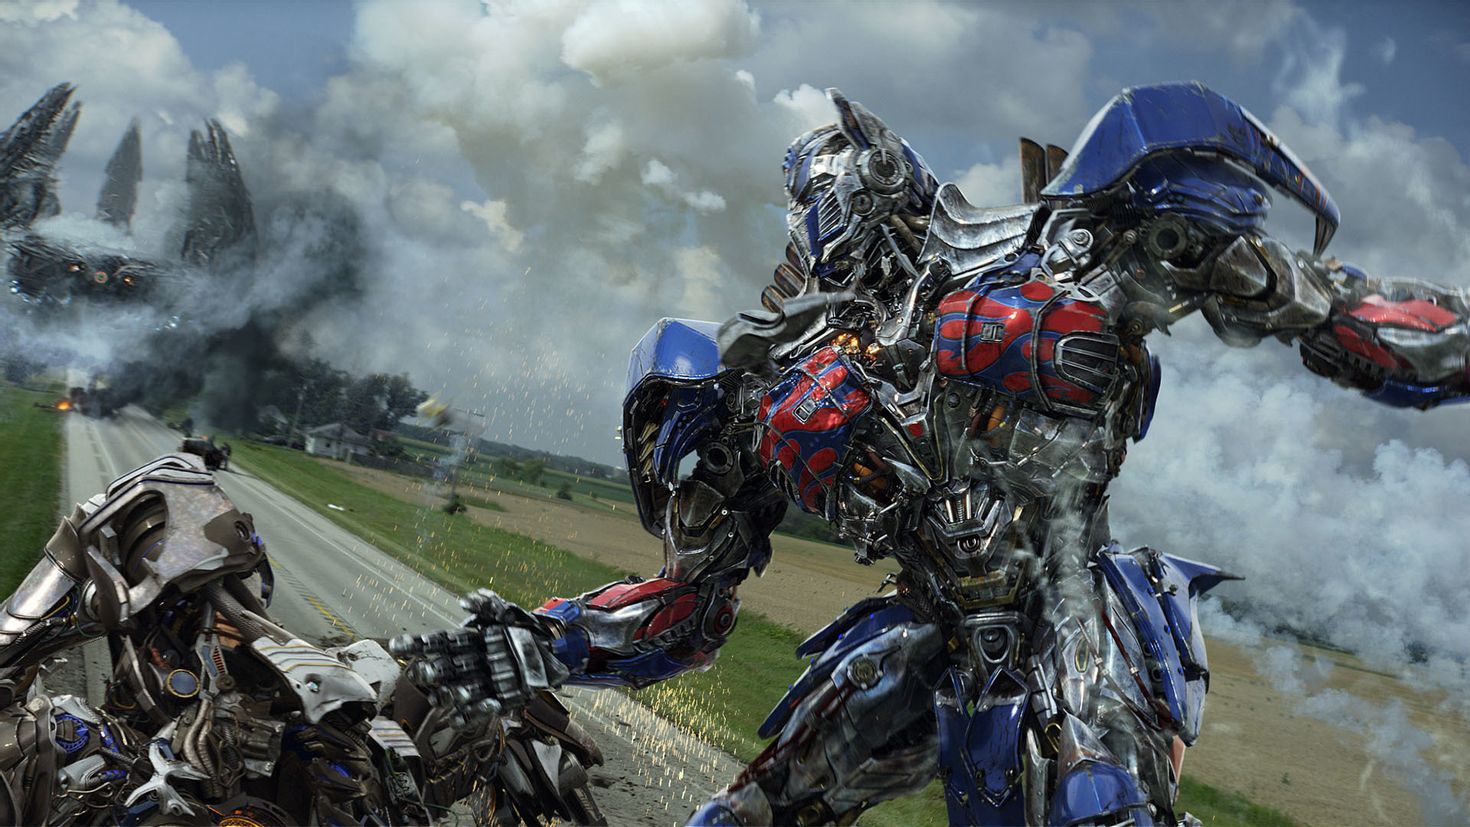 Transformers izle. Transformers 4 Оптимус Прайм. Optimus Prime 2014. Трансформеры Прайм эпоха истребления.